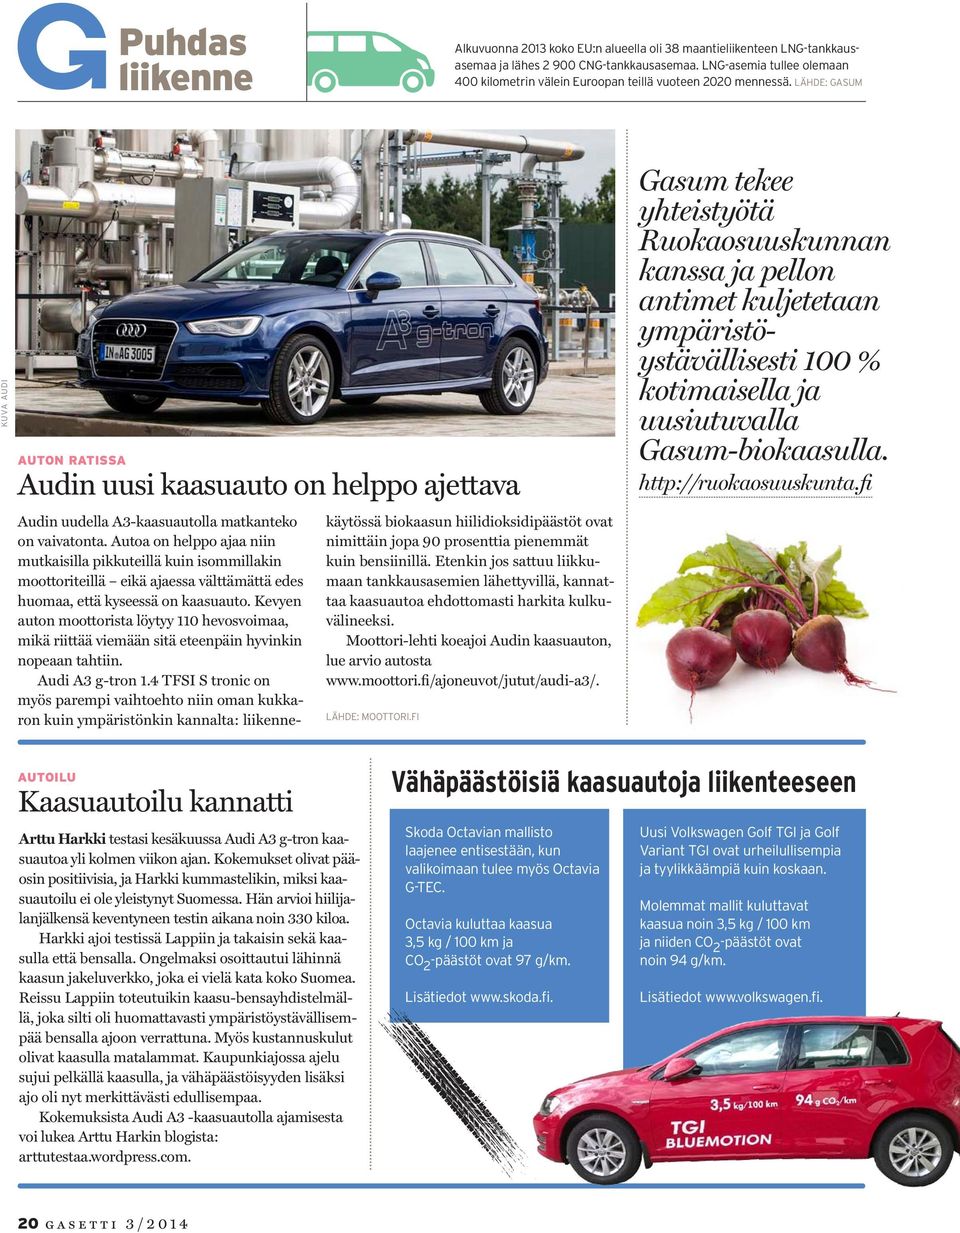 LÄHDE: GASUM KUVA AUDI AUTON RATISSA Audin uusi kaasuauto on helppo ajettava Audin uudella A3-kaasuautolla matkanteko on vaivatonta.